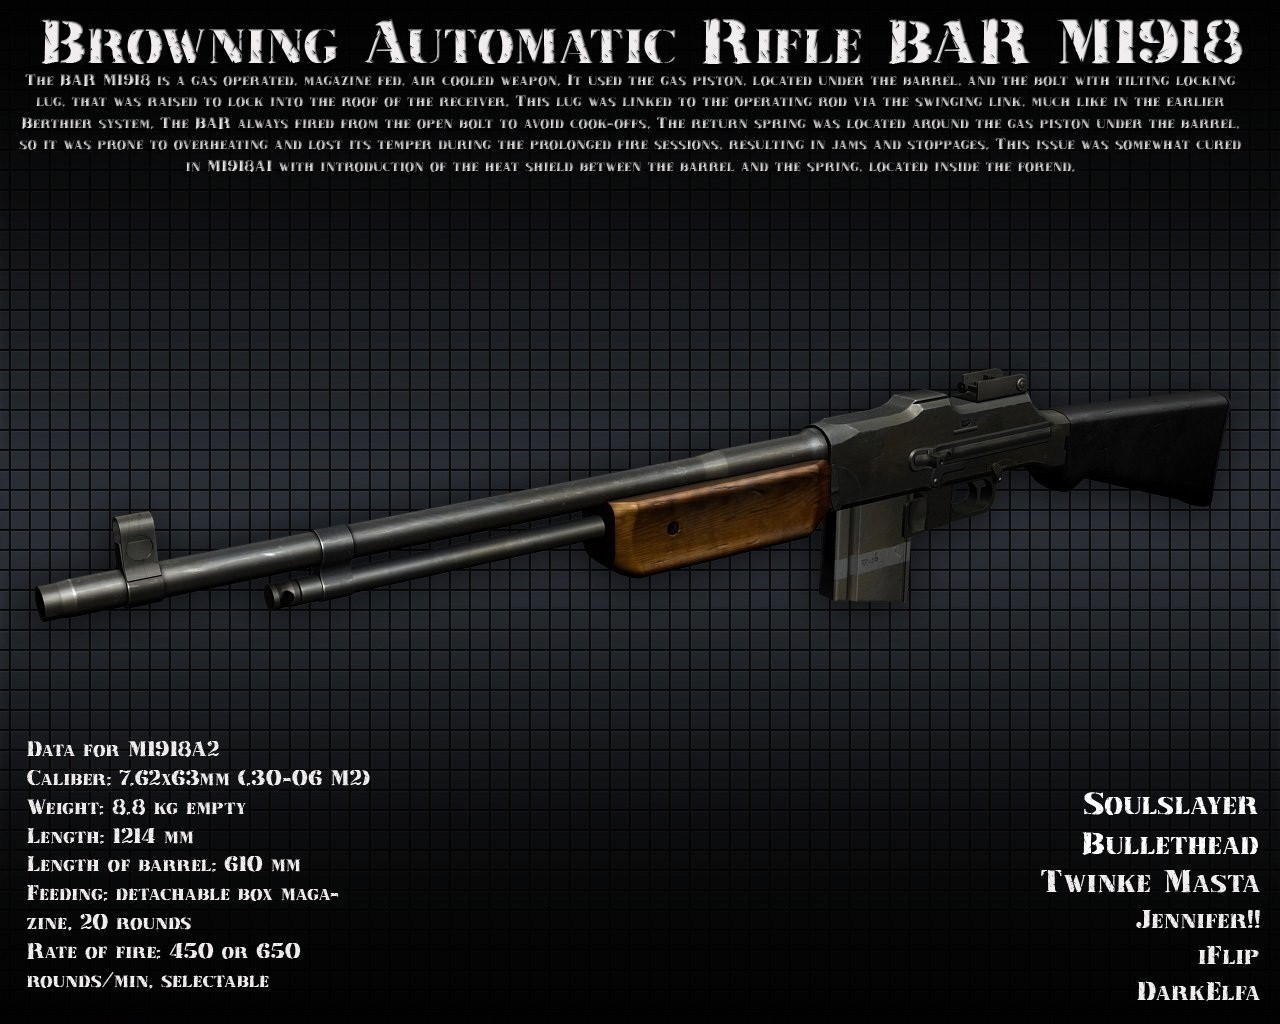 دانلود اسکین کلاش DarkElfa's Twinke Masta BAR for AK47